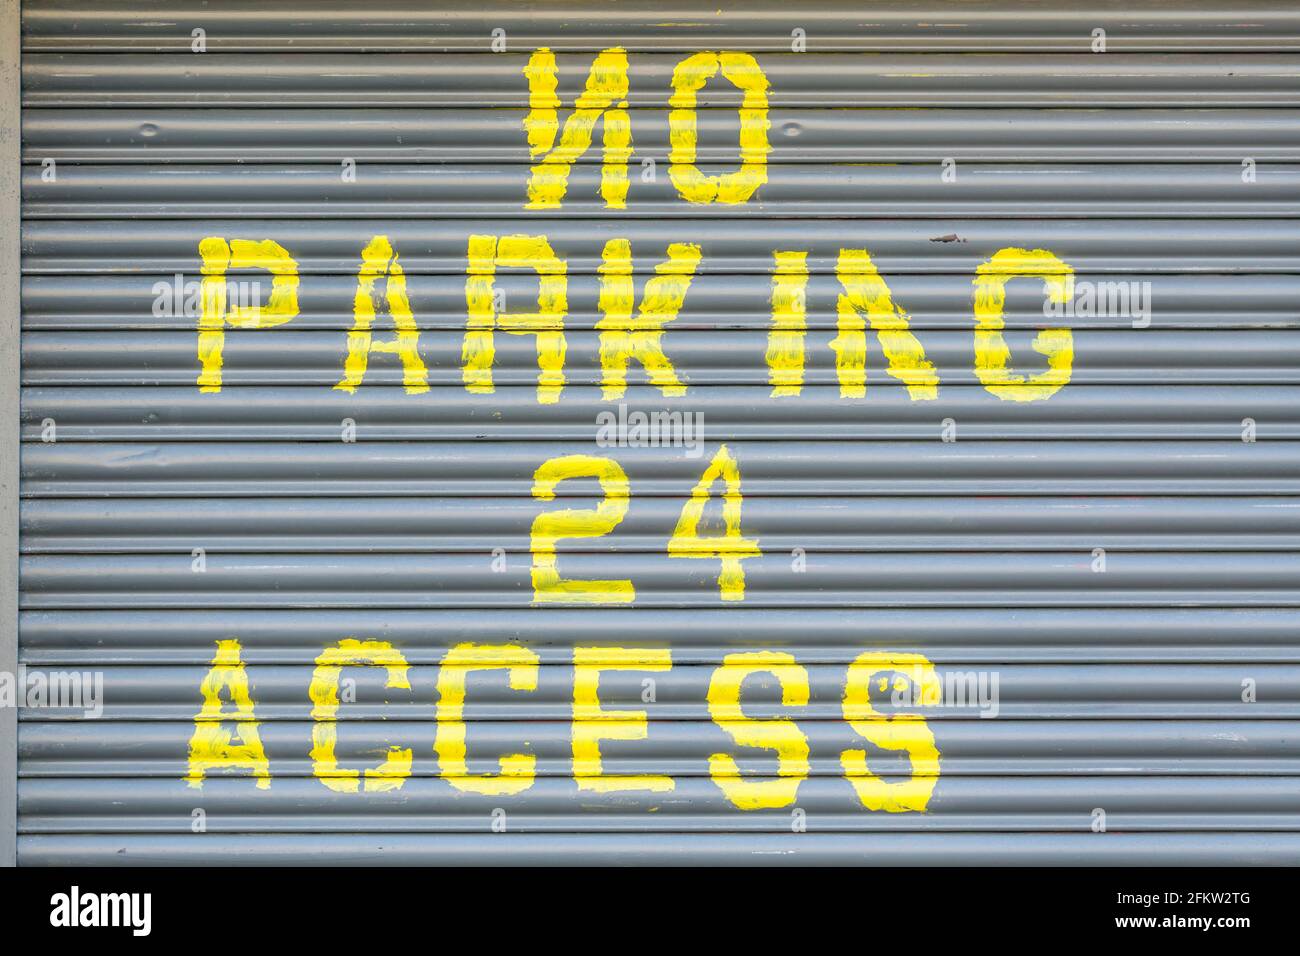 No Parking sign on a garage door, UK Stock Photo